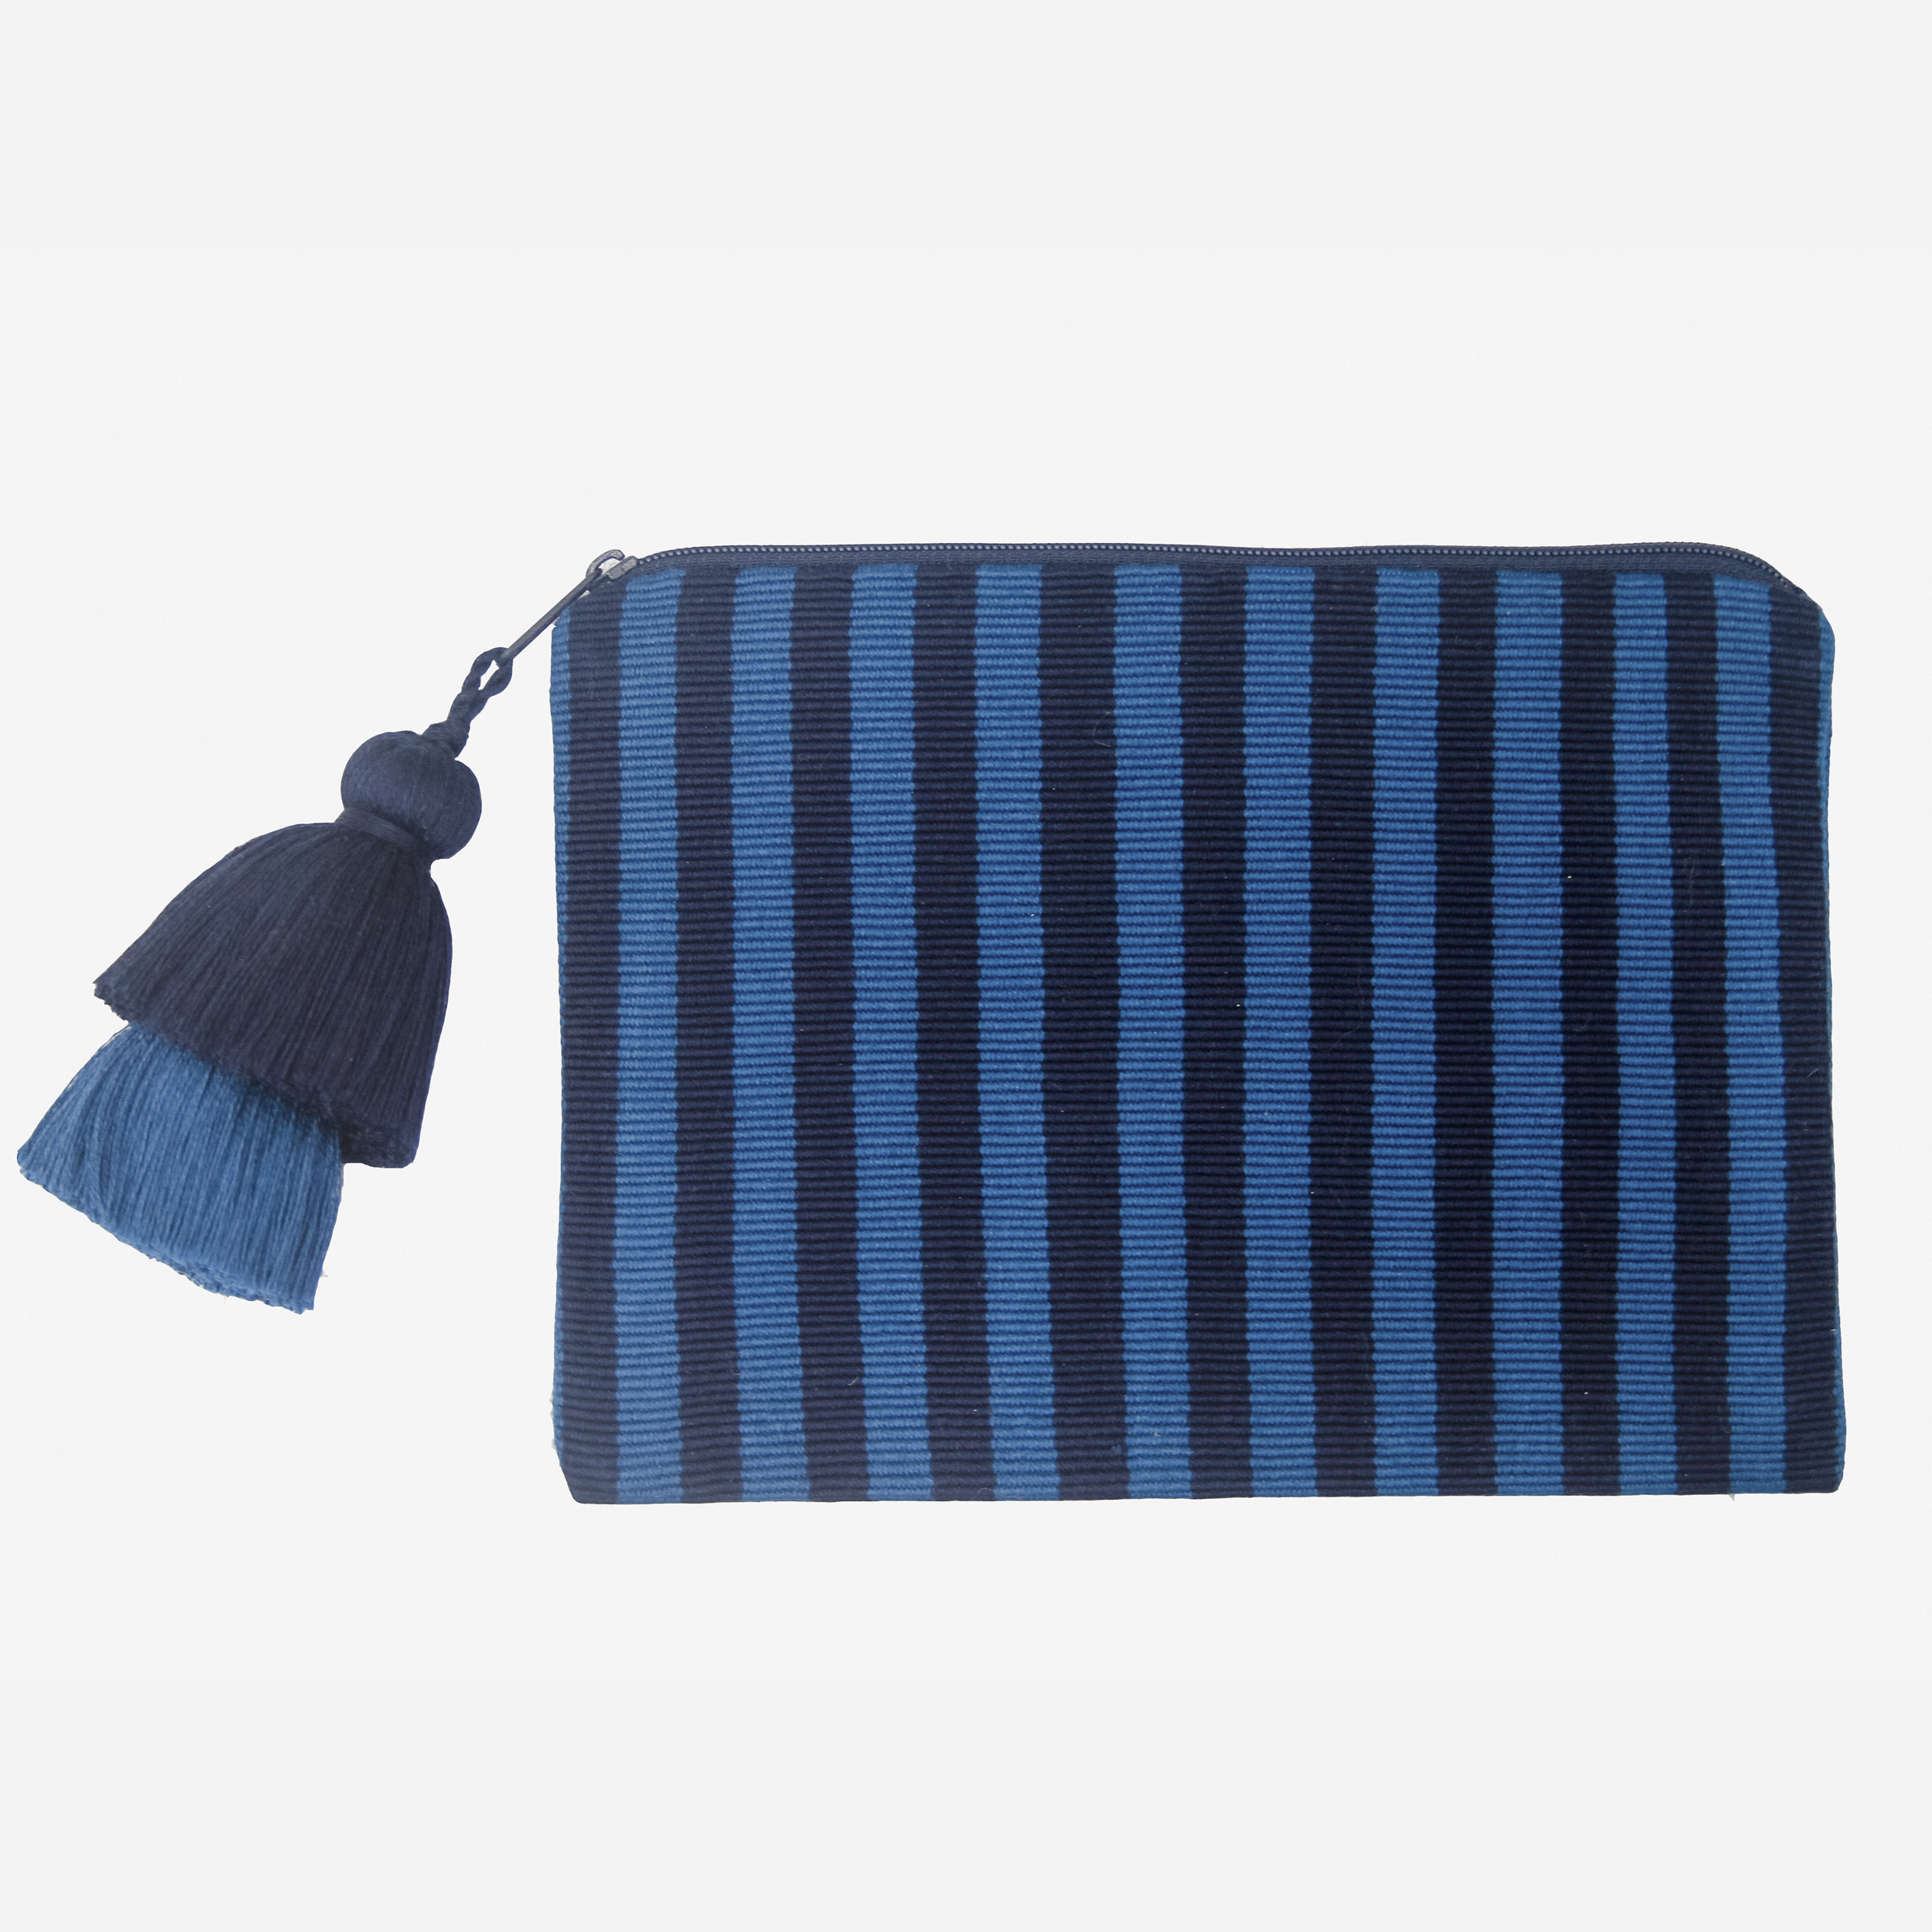 Stripes Pouch. Ande Collection. – Pais Textil